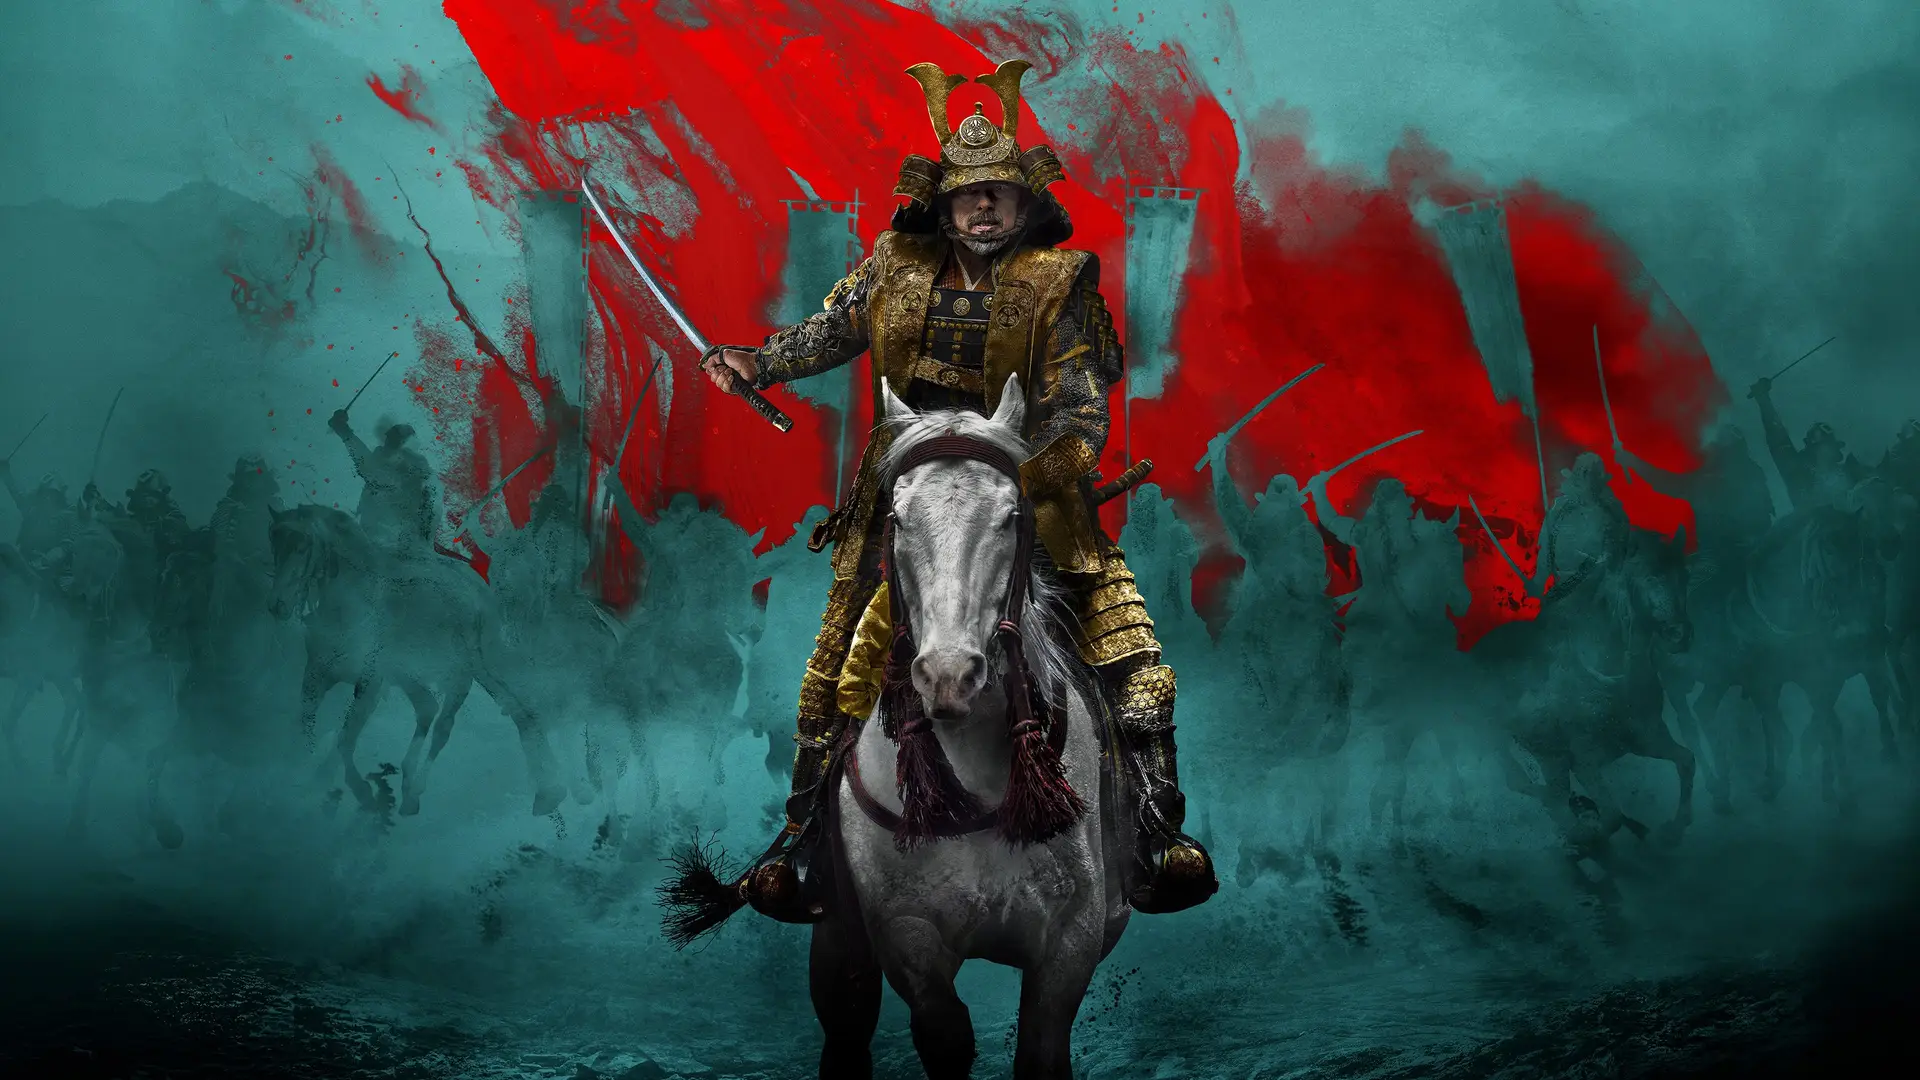 Imagen promocional de la serie Shôgun con un guerrero de armado en color dorado montado en un caballo blanco